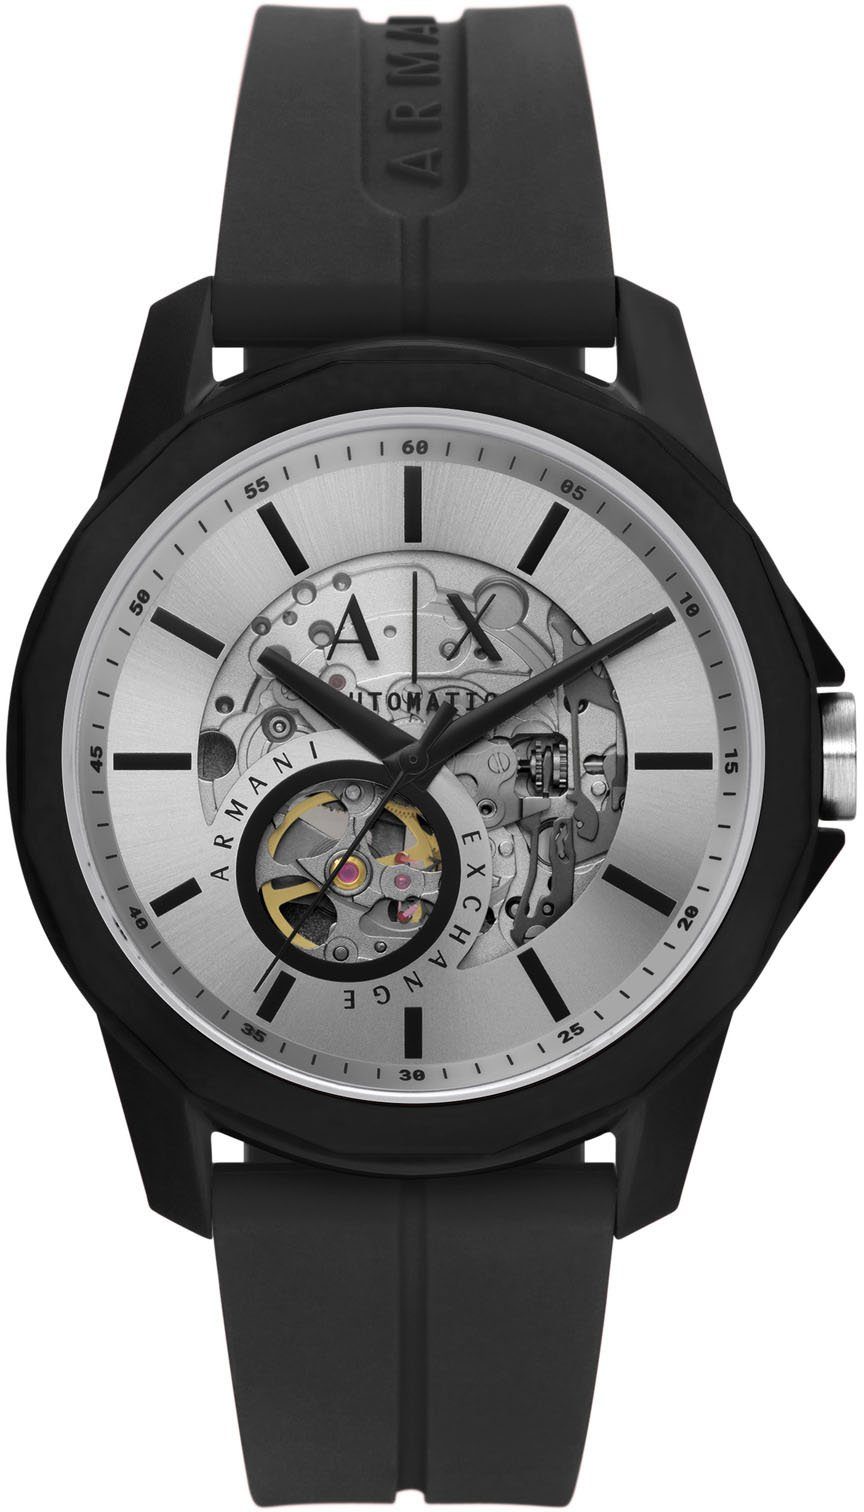 ARMANI EXCHANGE Automatikuhr AX1726, Armbanduhr, Herrenuhr, Mechanische Uhr, analog